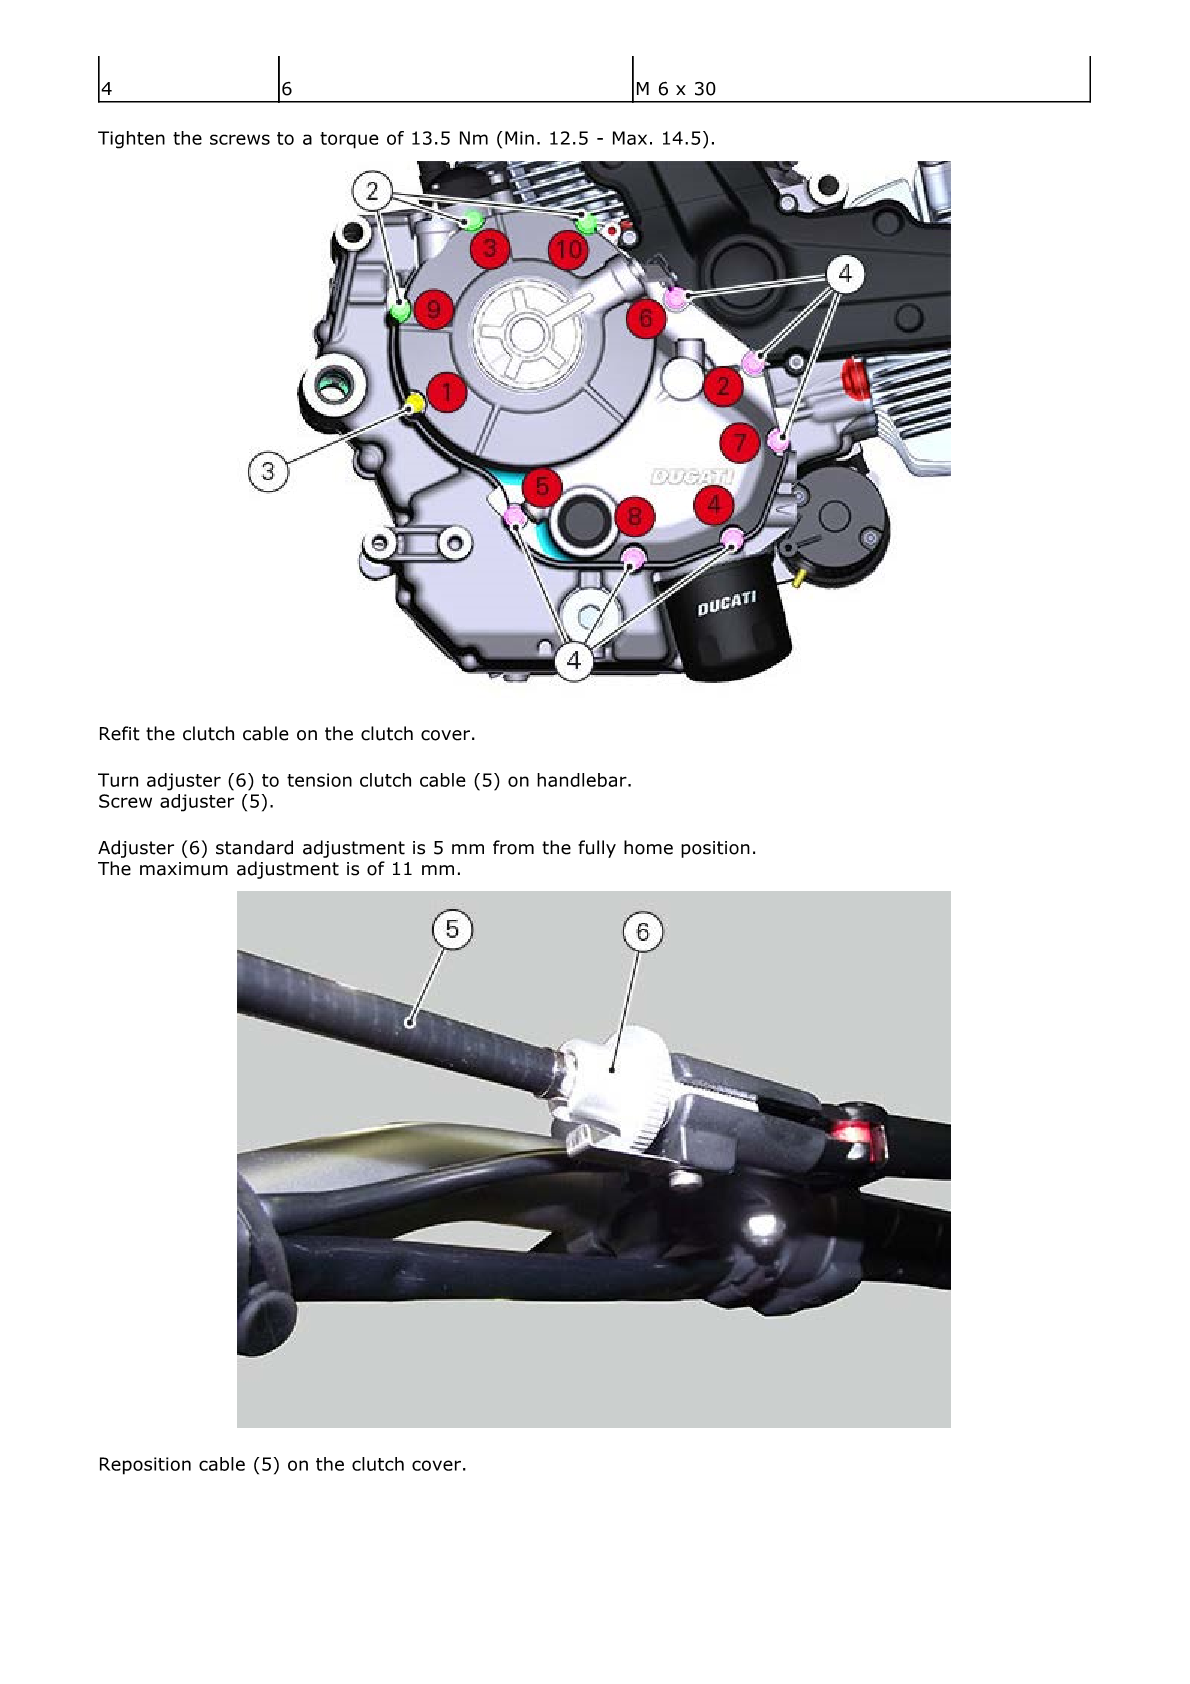 2015 en Ducati Scrambler 800 Manual de servicio